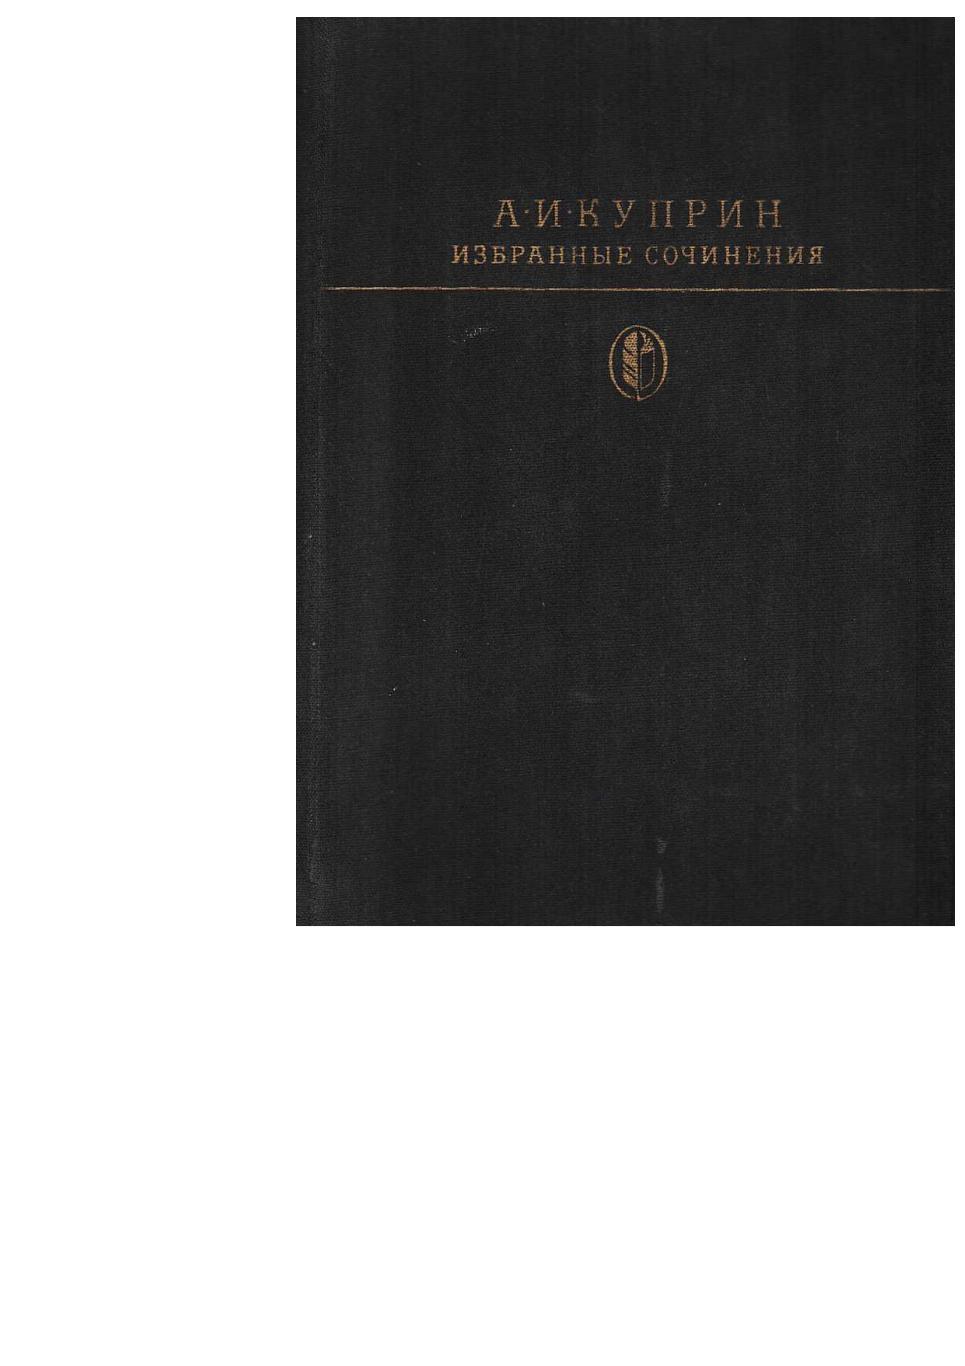 Куприн А.И. Избранные сочинения. – М., 1985. Библиотека классики